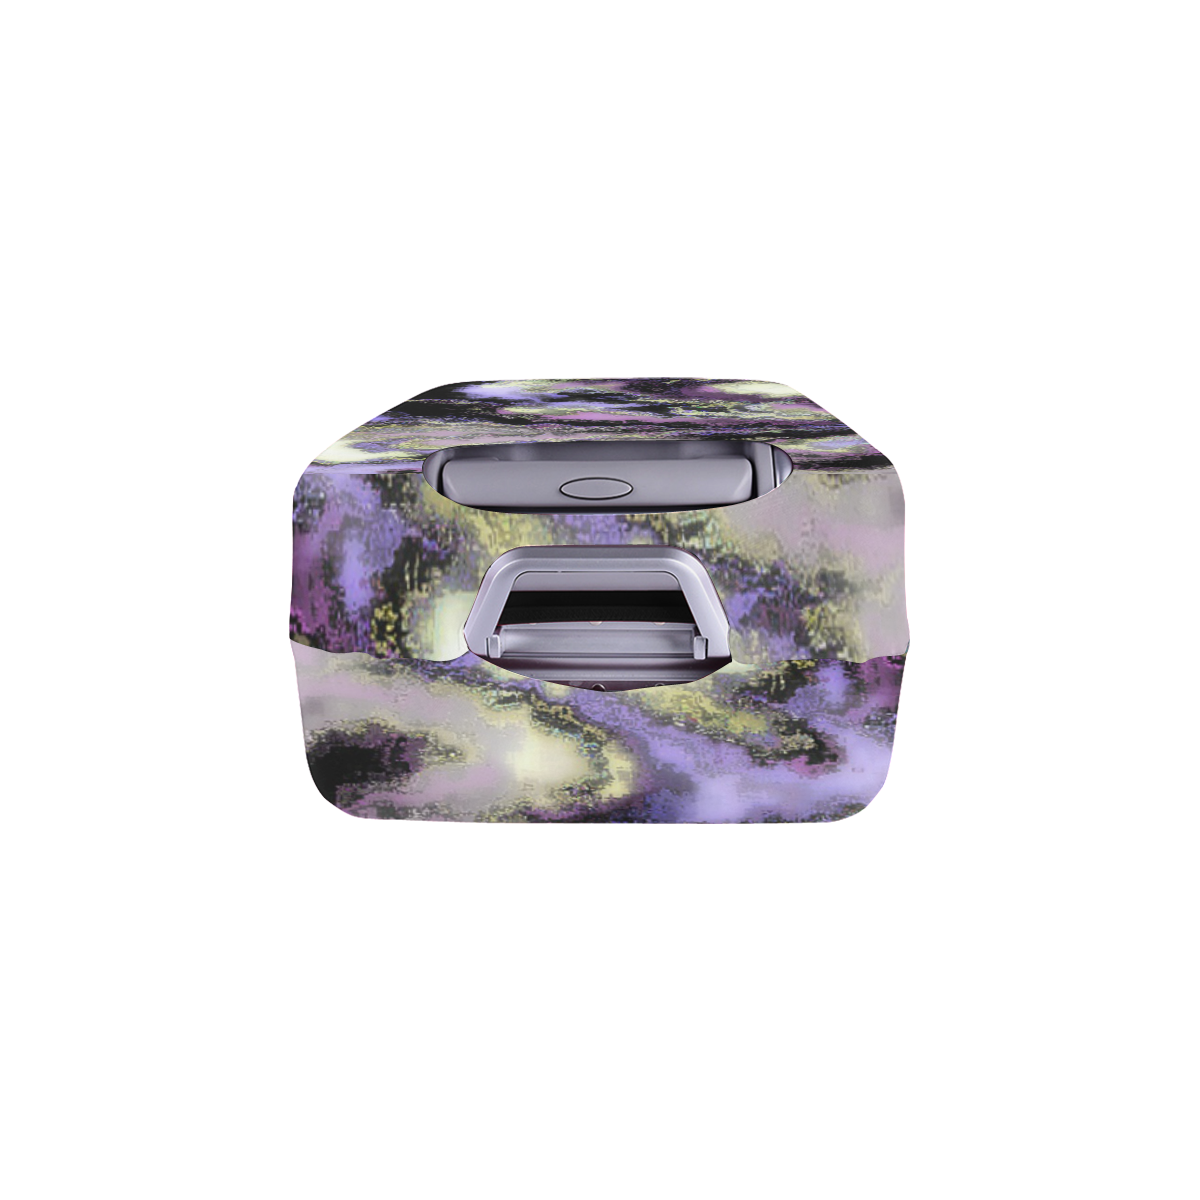 Purple marble Luggage Cover/Medium 22"-25"